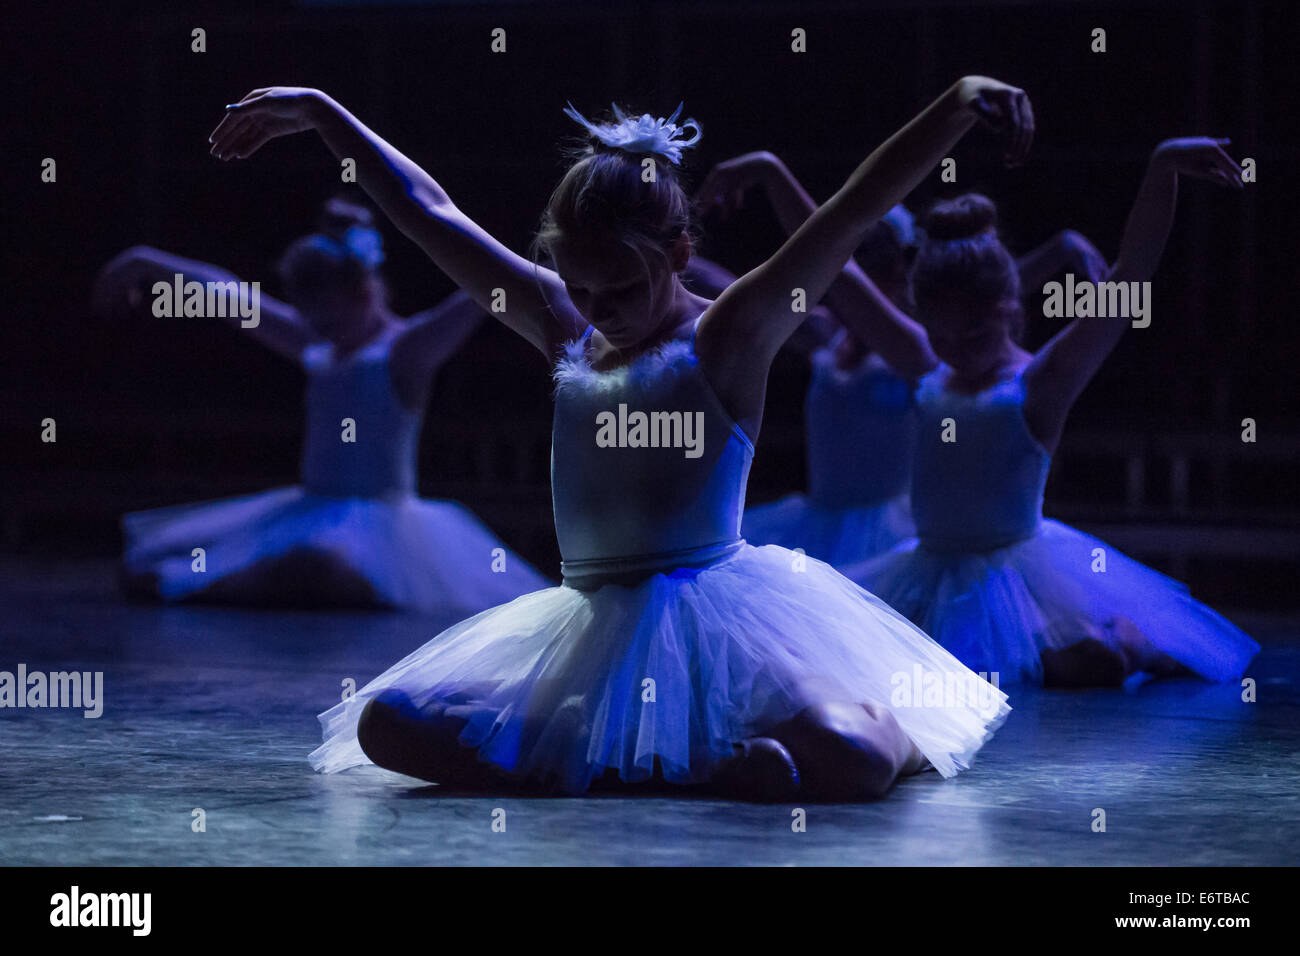 Das Ballett Schwanensee. Ein Theater-Foto des berühmten Balletts von jungen Studenten einer Tanzschule durchgeführt. Stockfoto